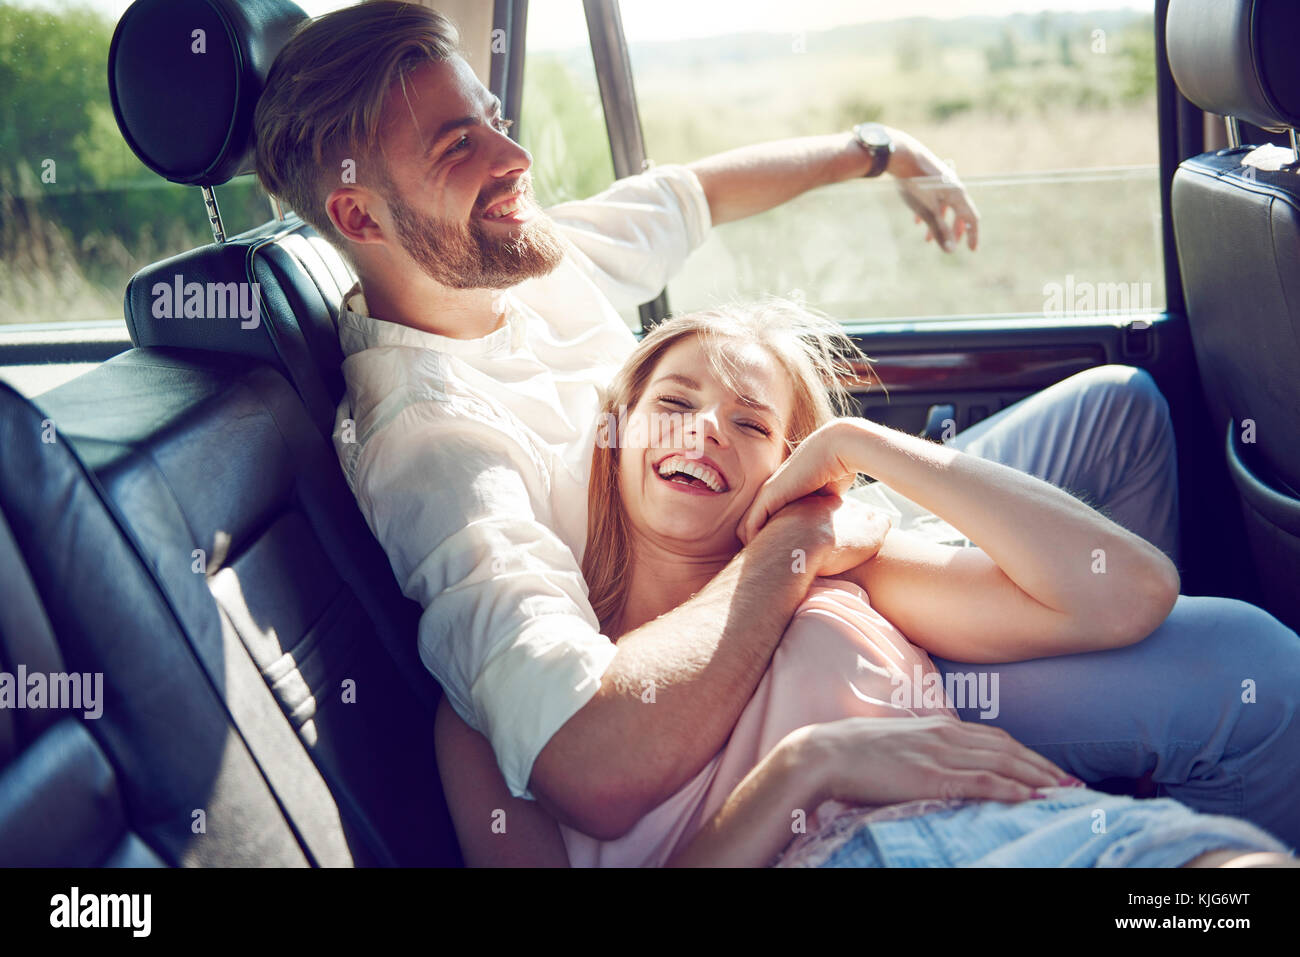 Affectionate Couple avoir un amusement au cours de déplacement en voiture, Cracovie, Pologne, Malopolskie Banque D'Images